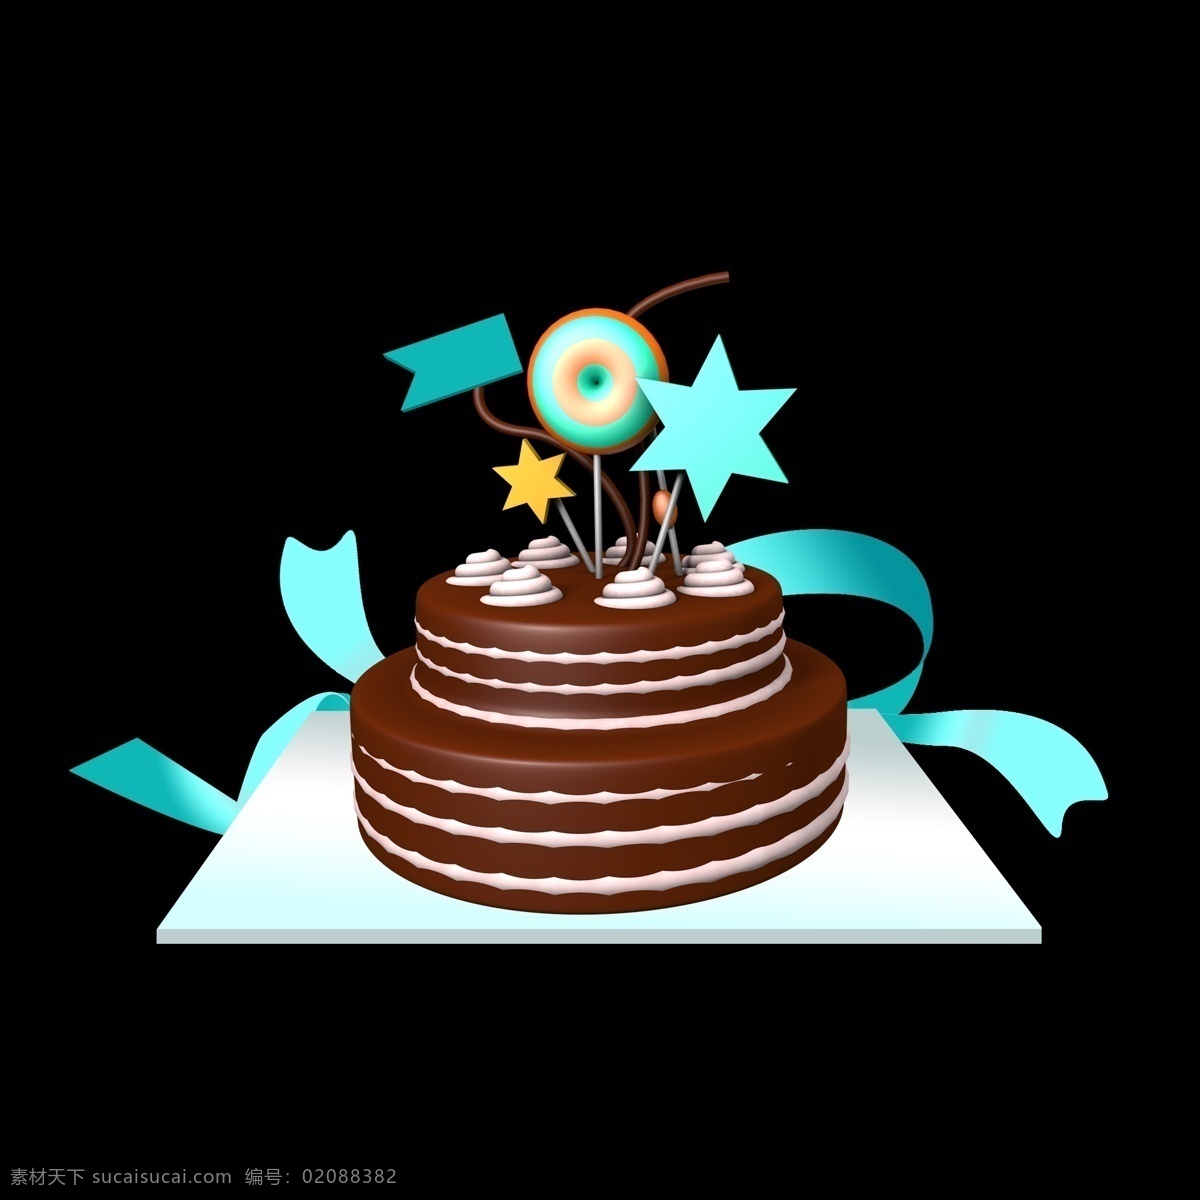 生日蛋糕 巧克力 彩带 棒棒糖 免 抠 图中 包含 内容 蛋糕蓝色彩带 五角星奶油 适于 各种 美食 海报 风格 清新 简约